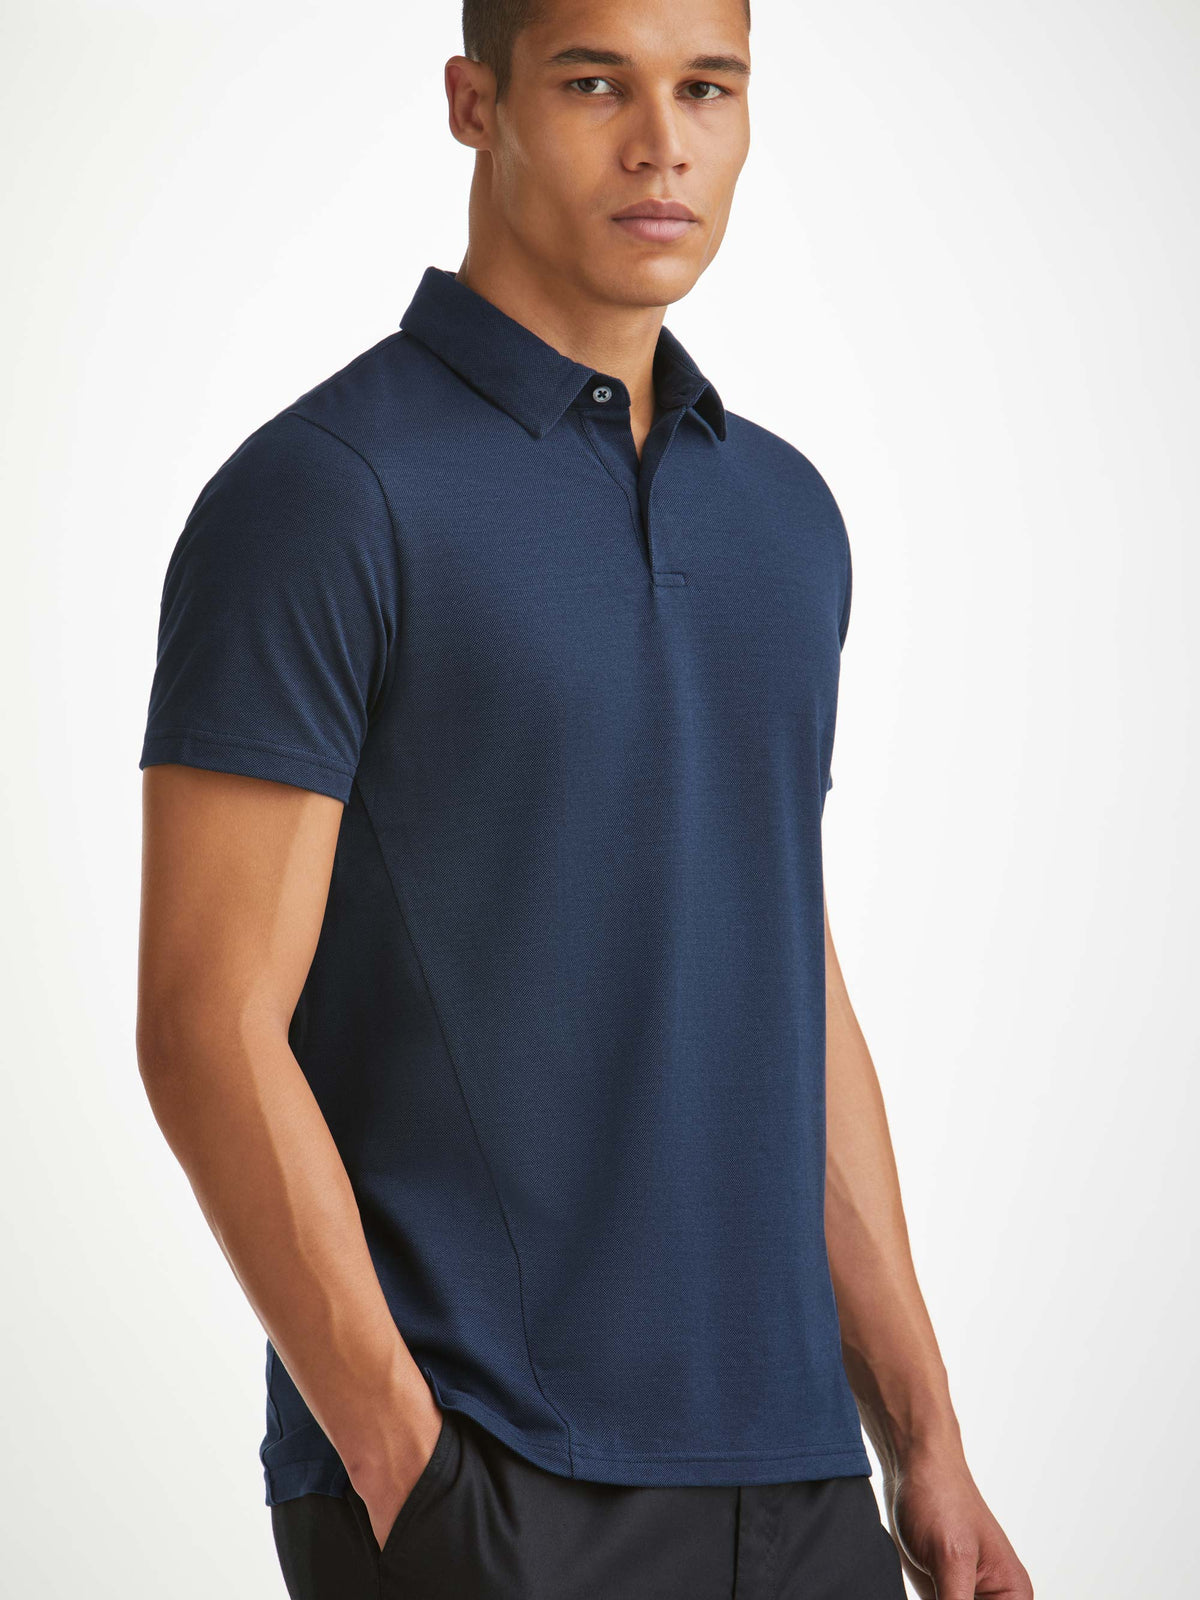 Men's Polo Shirt Ramsay 2 Pique Cotton Tencel Navy